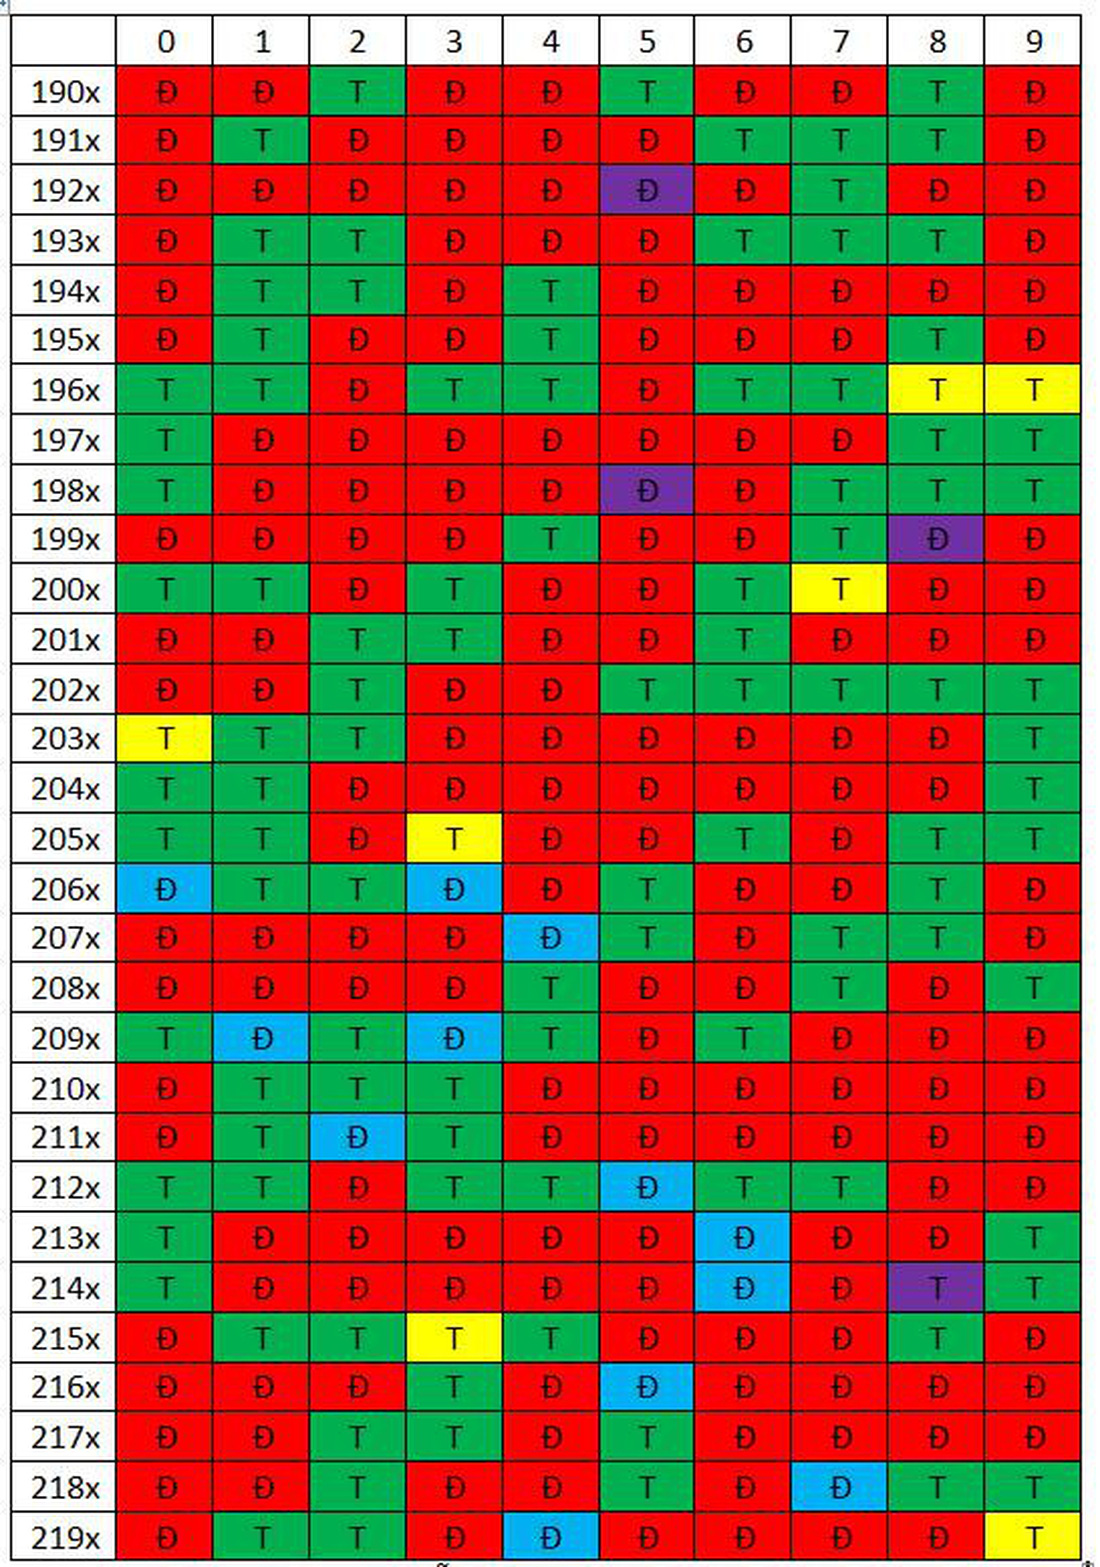 Chữ &quot;Đ&quot; ở ô màu đỏ biểu thị những năm Việt Nam và các nước có múi giờ +8 như Trung Quốc, Hàn Quốc đều có tháng Chạp đủ. Chữ &quot;T&quot; ở ô màu xanh lá biểu thị những năm Việt Nam và các nước có múi giờ +8 có tháng Chạp thiếu. Các ô còn lại biểu thị tháng Chạp đủ, thiếu ở Việt Nam tương ứng với chữ &quot;Đ&quot;, &quot;T&quot; nhưng có sự khác biệt so với nước có múi giờ +8 - Ảnh: VŨ LỘC